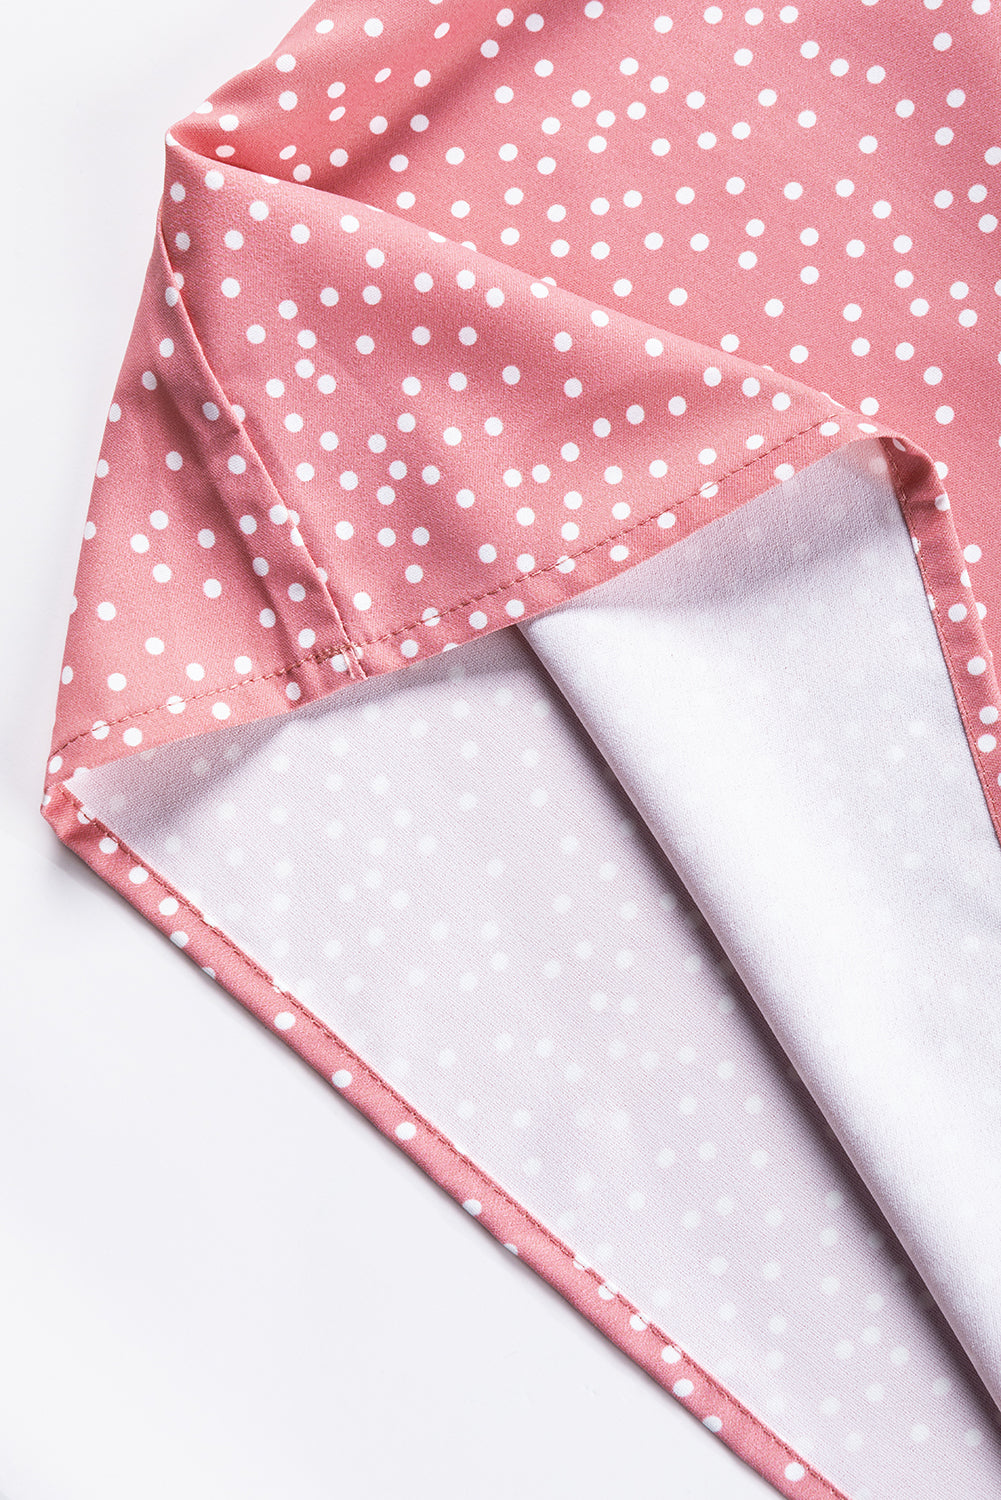 Rožnata bluza s pikami in naborki, s plapolastimi rokavi in ​​ovratnikom